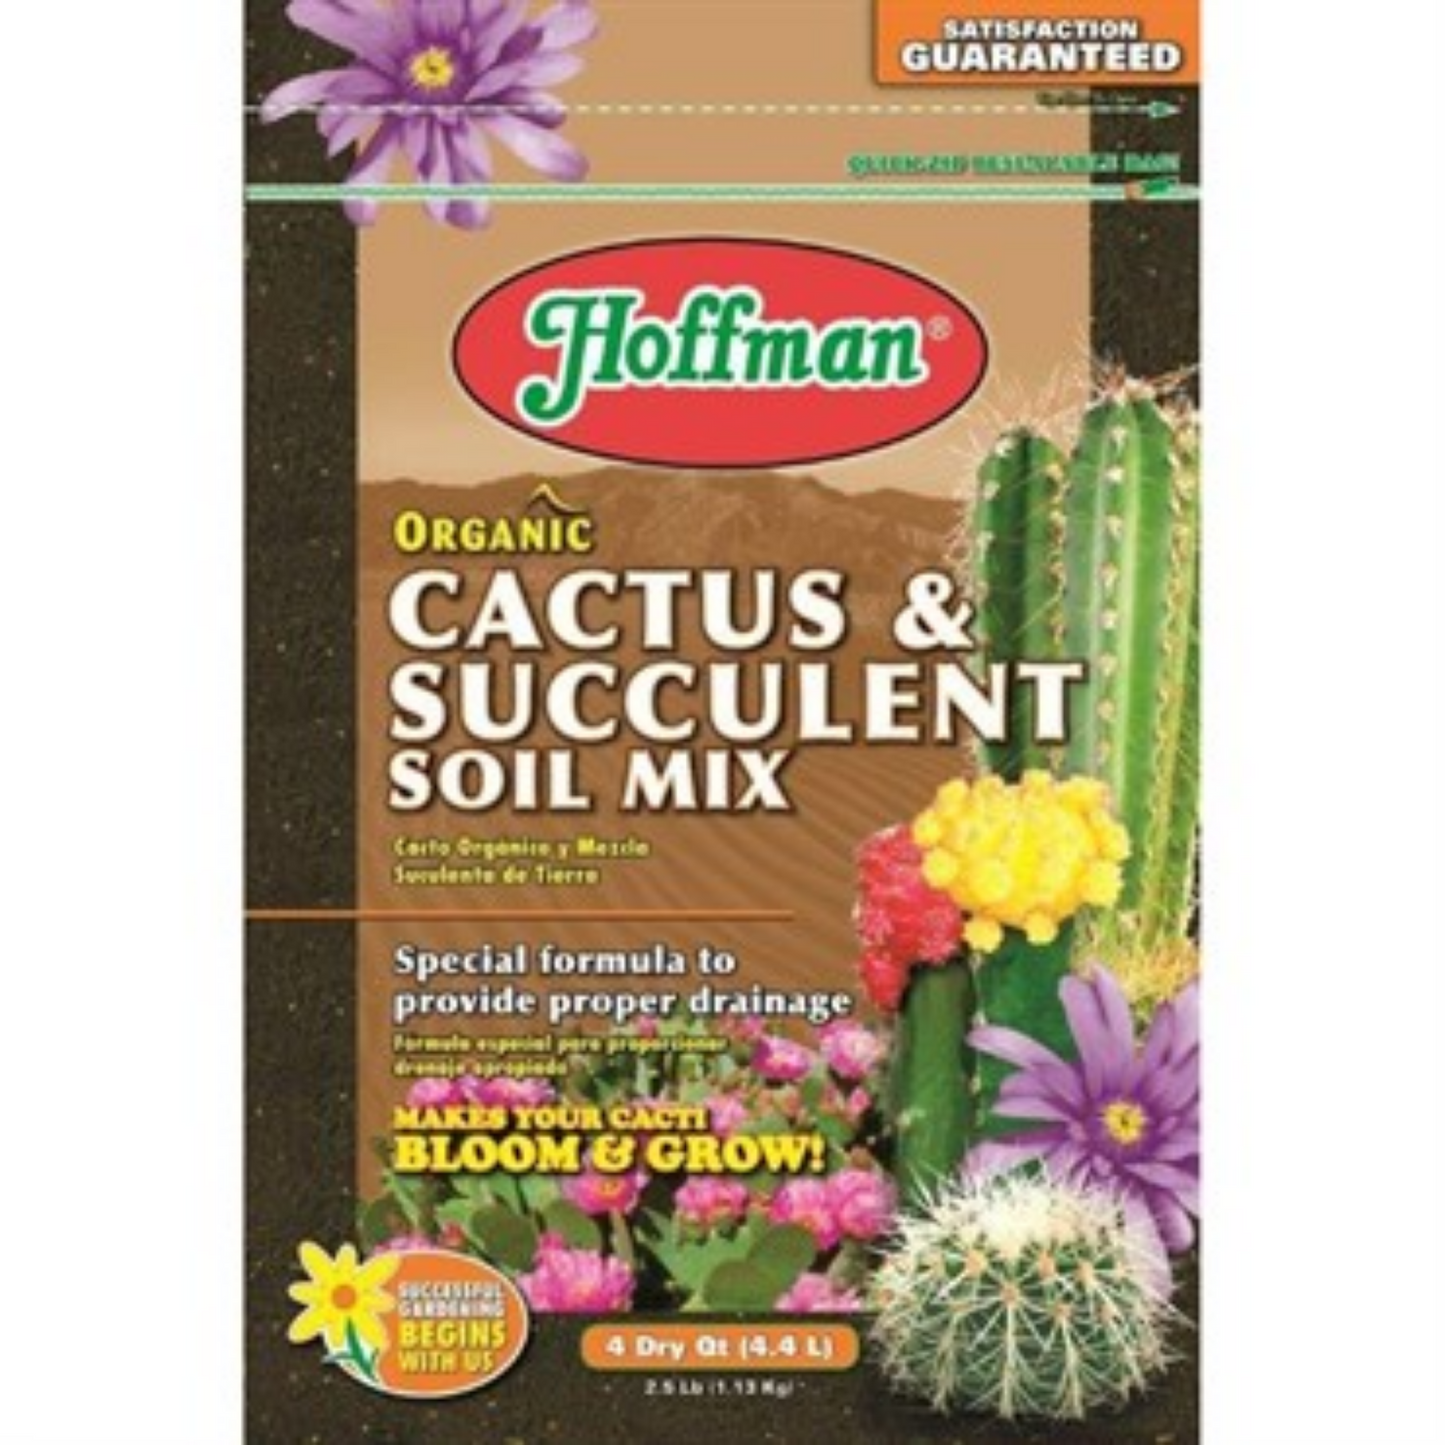 Hoffman 10qt Cactus &Succulent Soil Mix